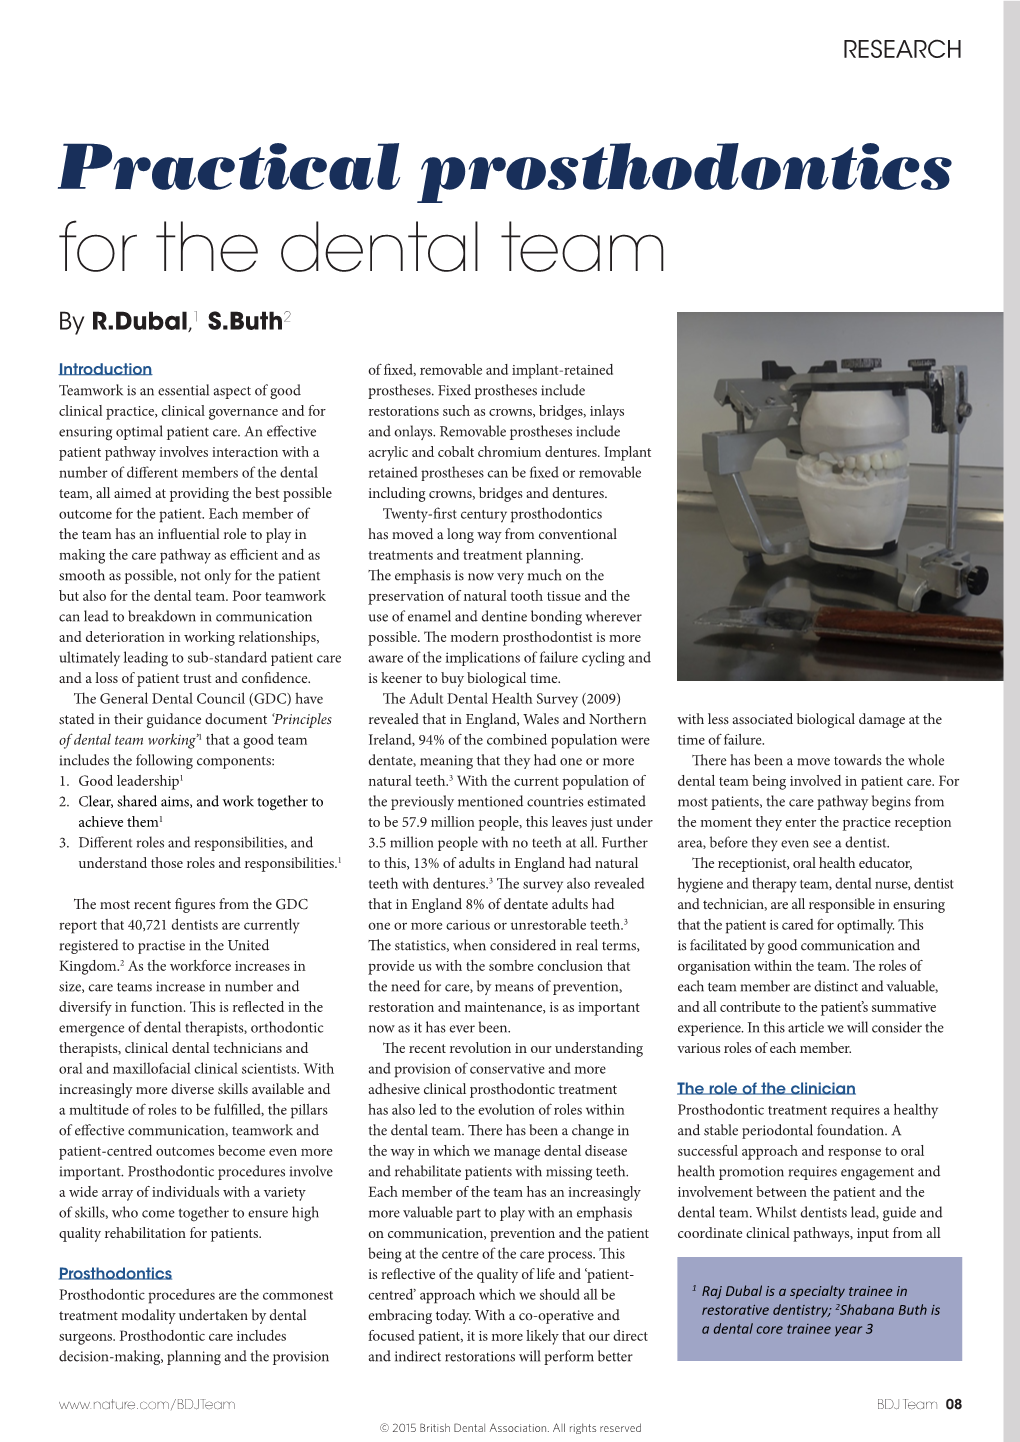 Practical Prosthodontics for the Dental Team